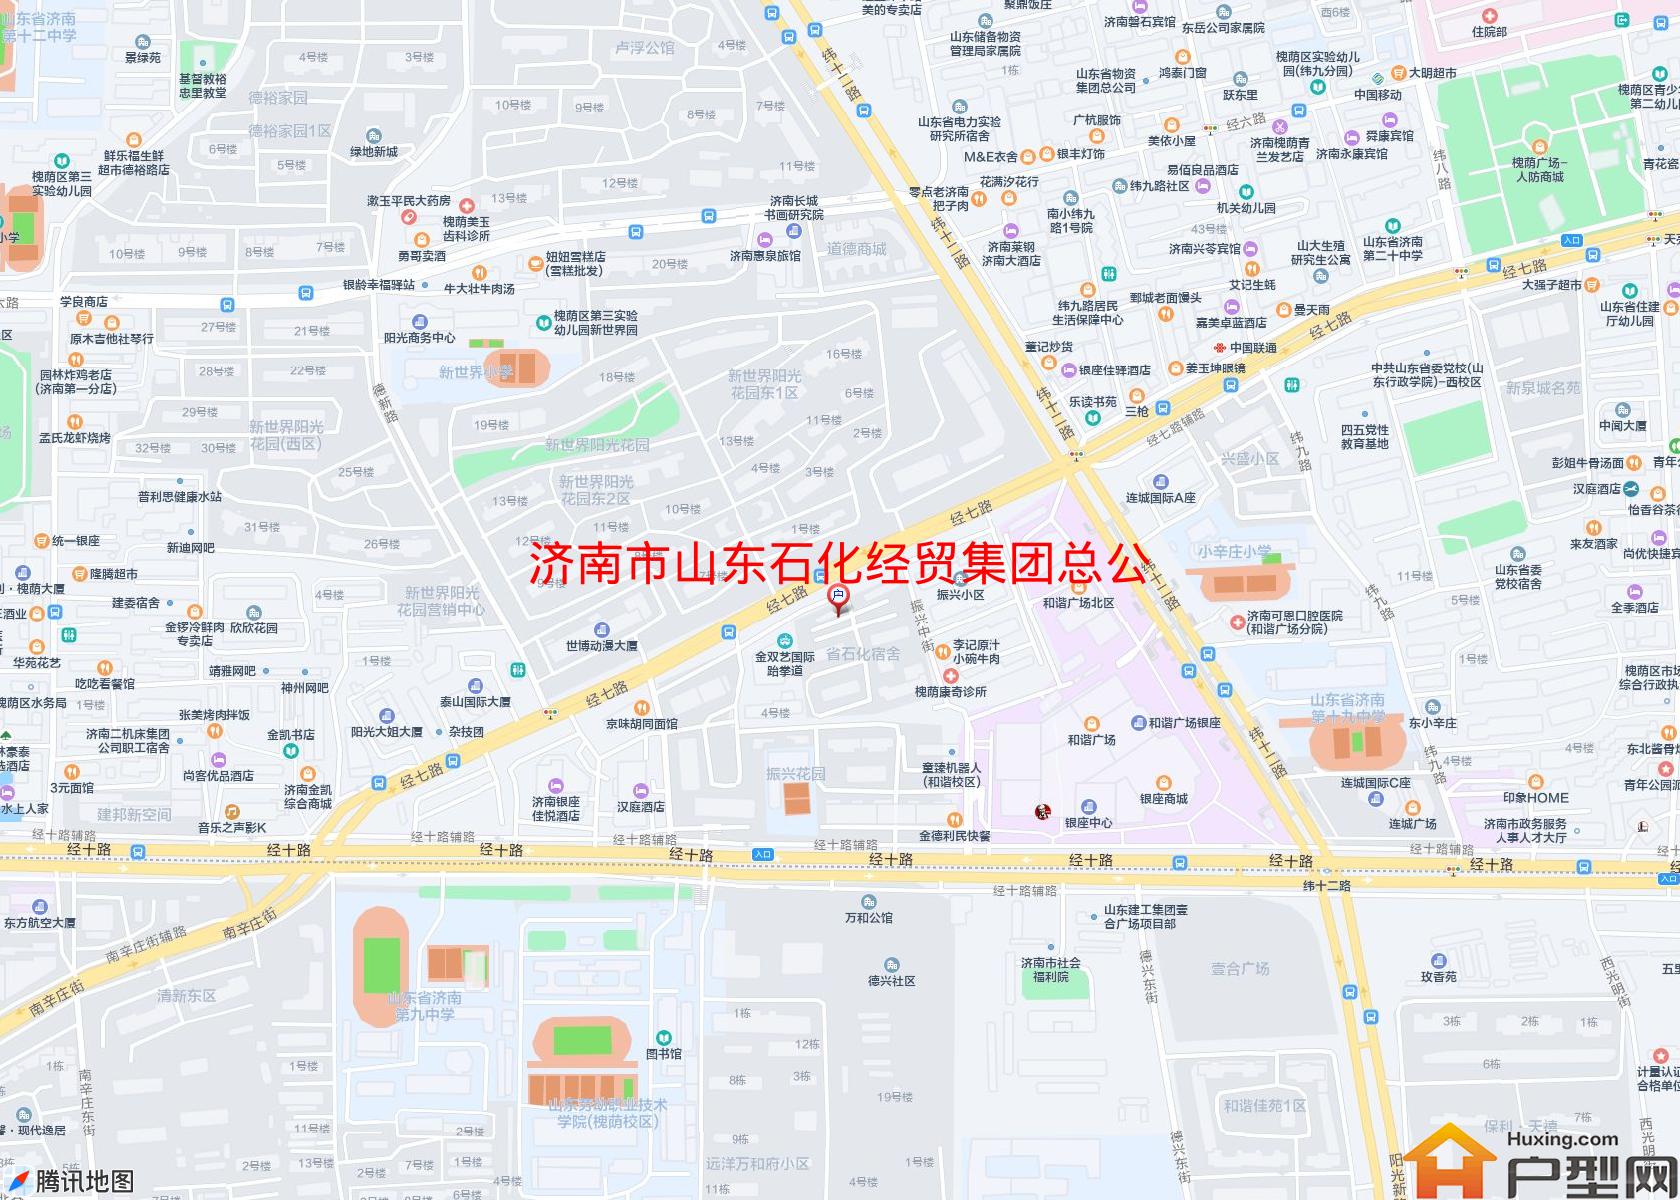 山东石化经贸集团总公司宿舍小区 - 户型网